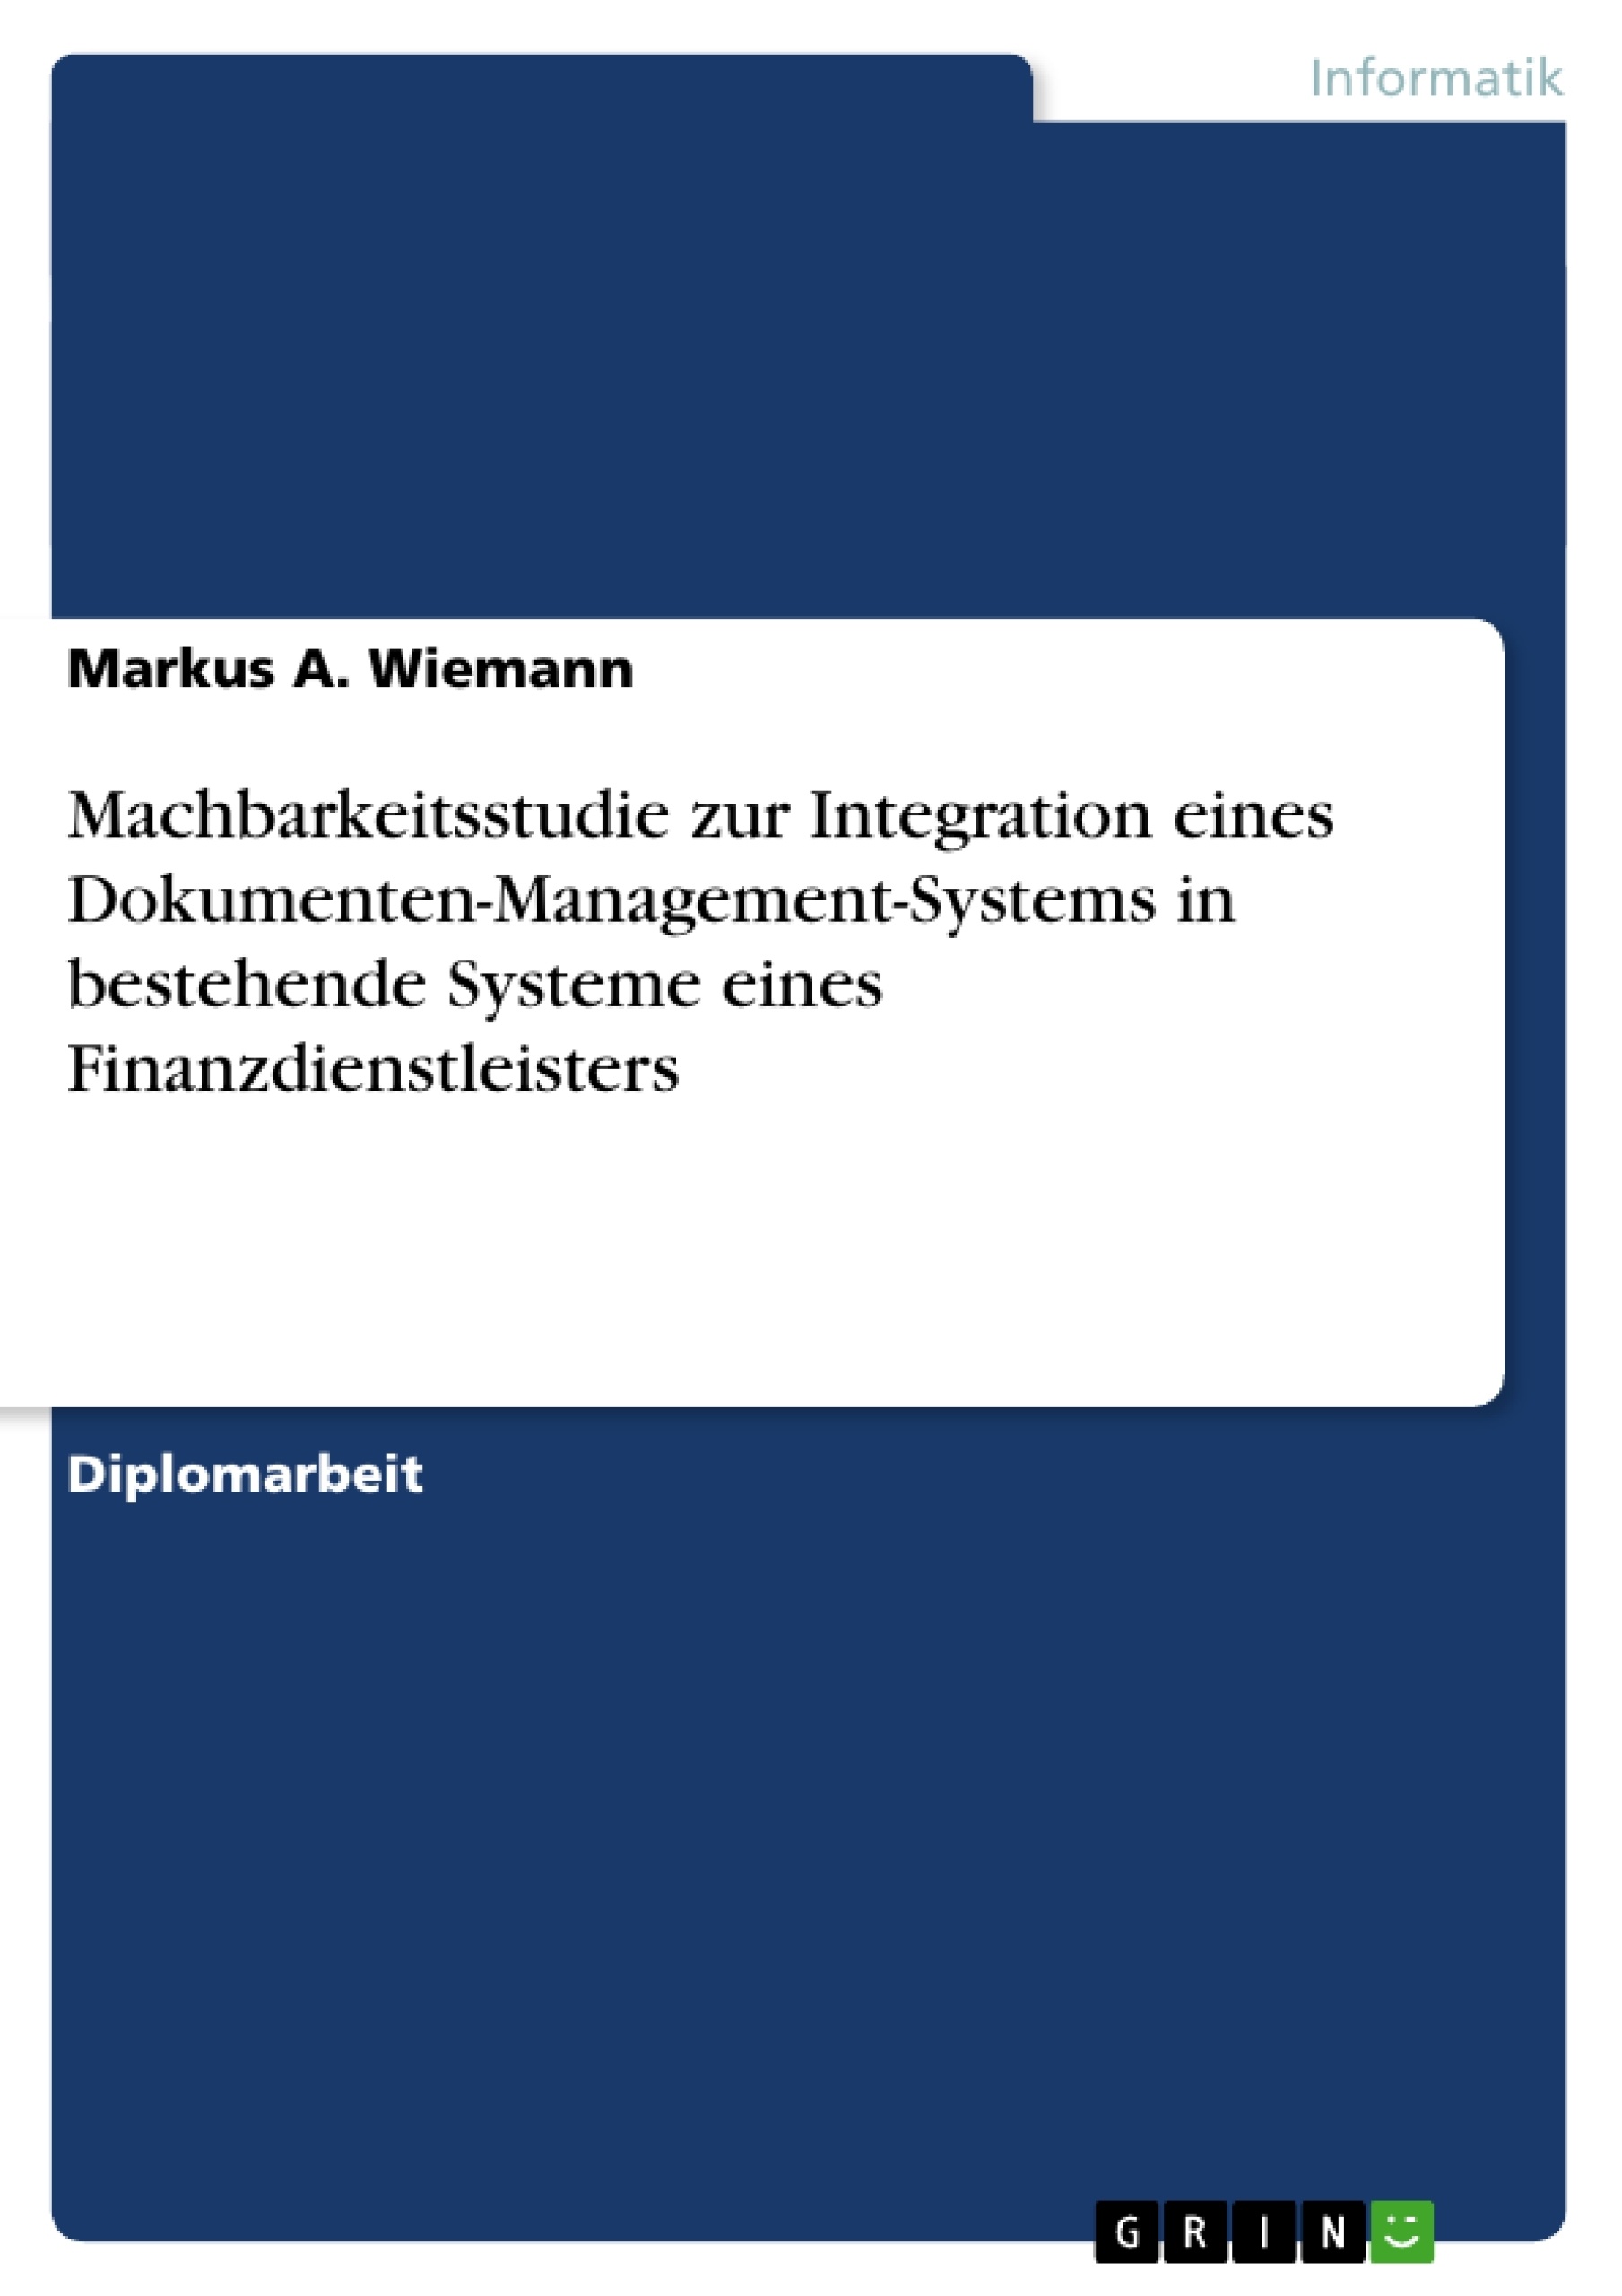 Titel: Machbarkeitsstudie zur Integration eines Dokumenten-Management-Systems in bestehende Systeme eines Finanzdienstleisters